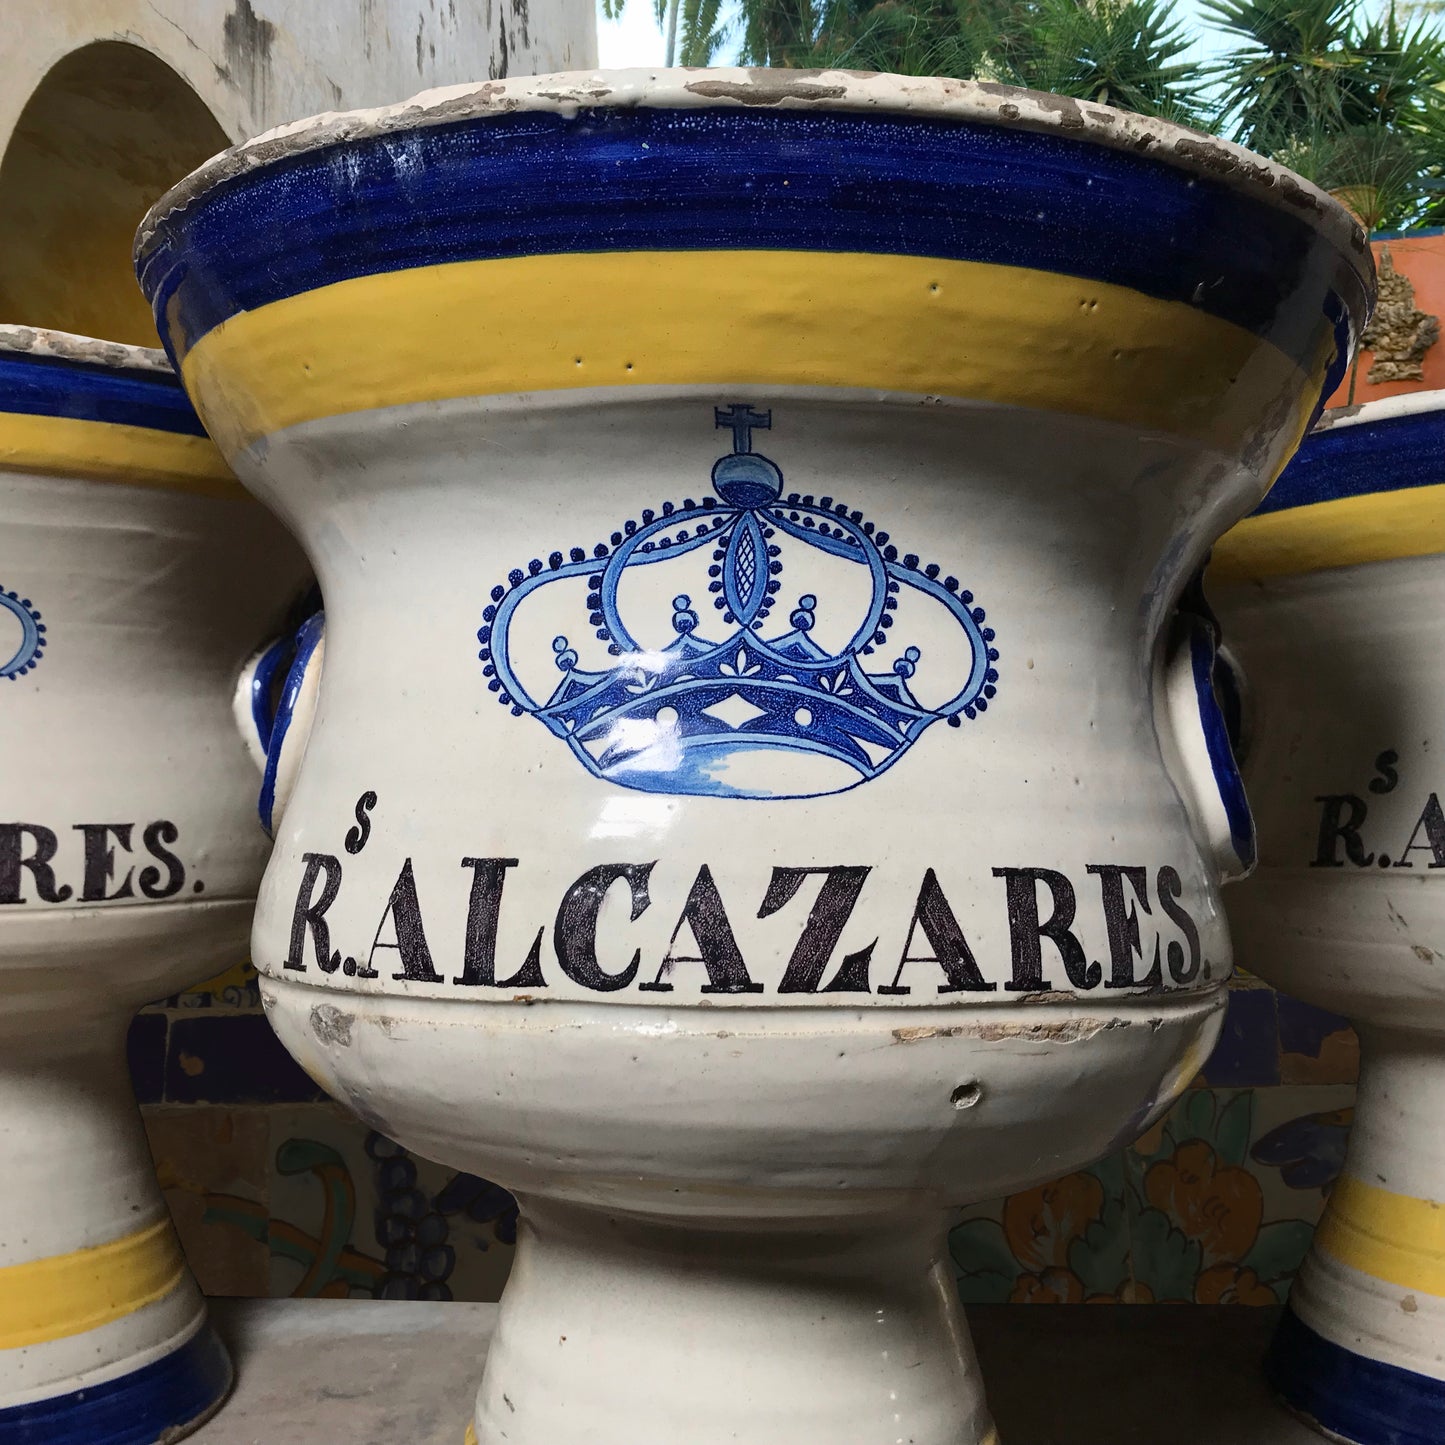 Three 19th Century Faience Spanish Campana Vases from the Real Alcázar de Sevilla (Royal Alcázar Palace of Seville)